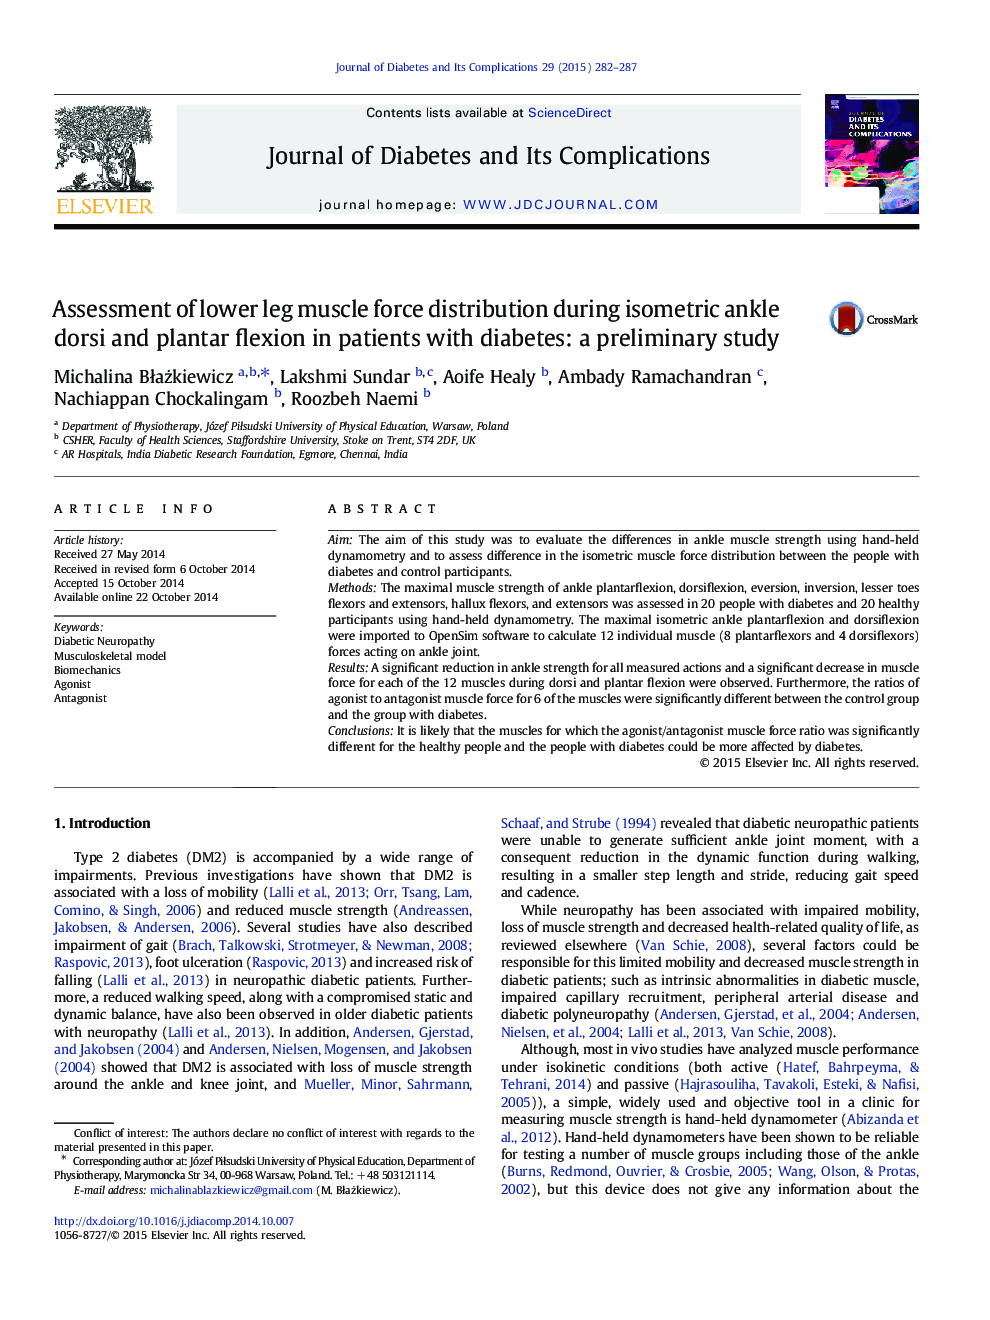 ارزیابی توزیع نیروی عضلانی پایه در طی دوزهای مچ پا و فلکسون پالت در بیماران مبتلا به دیابت: یک مطالعه اولیه 